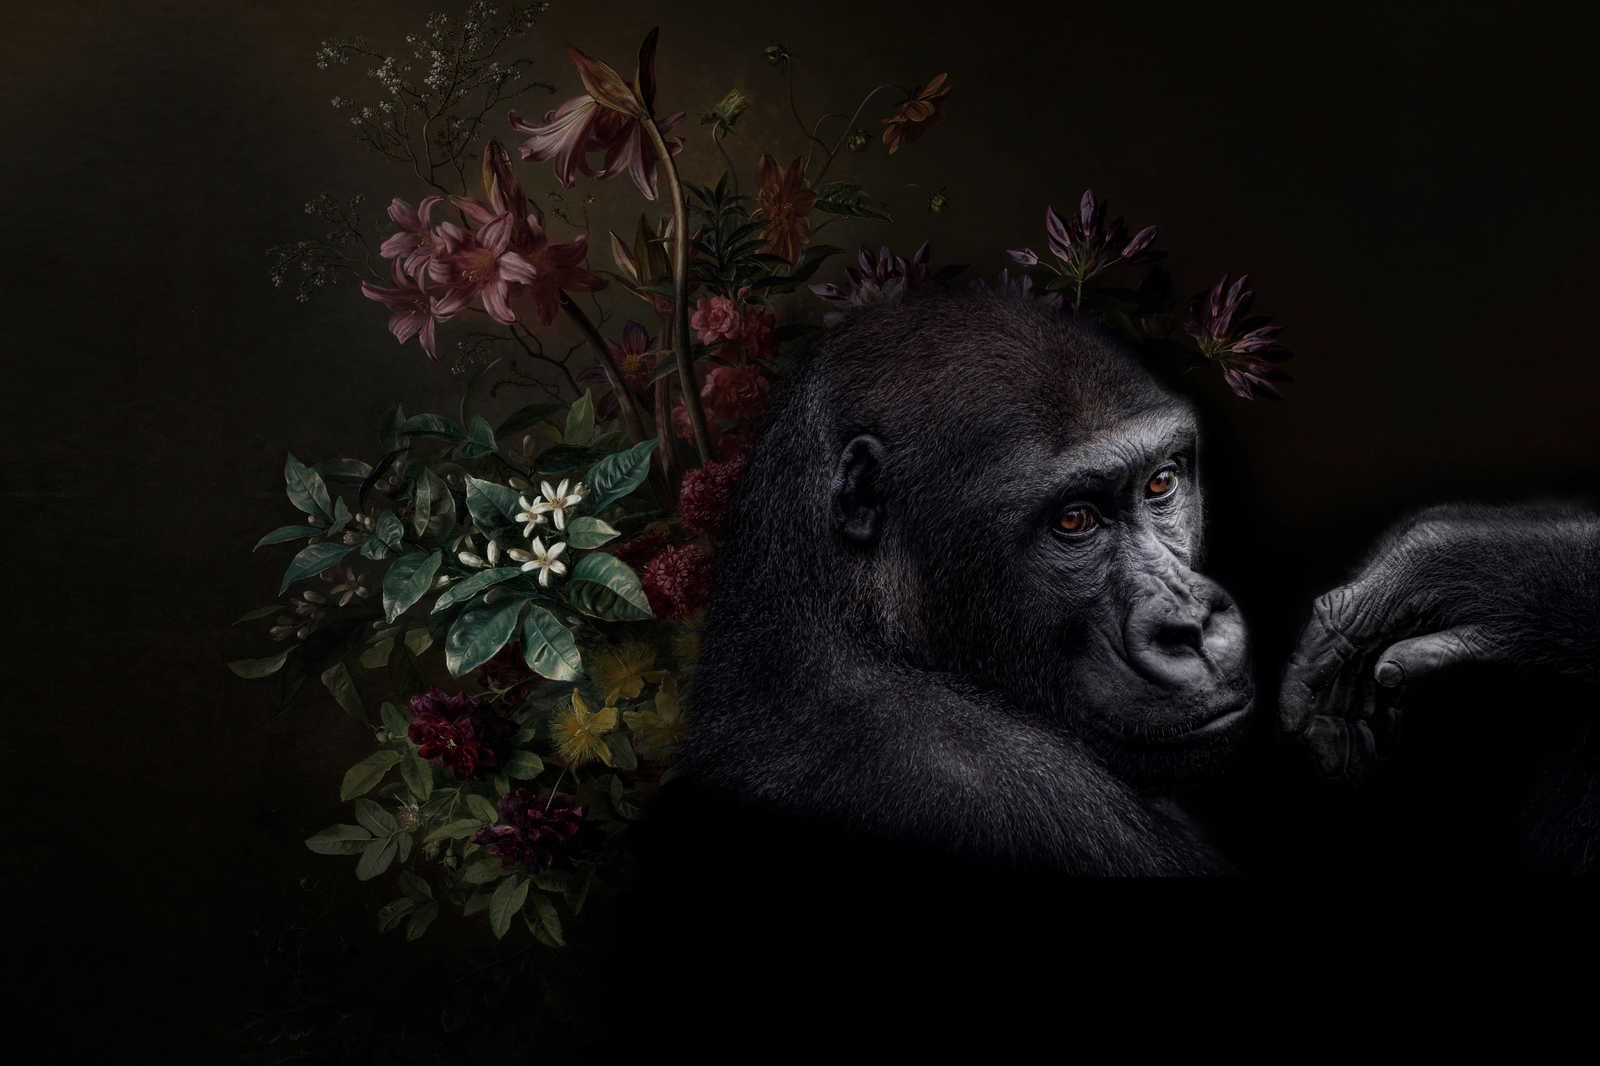             Quadro su tela Ritratto di gorilla con fiori - 0,90 m x 0,60 m
        